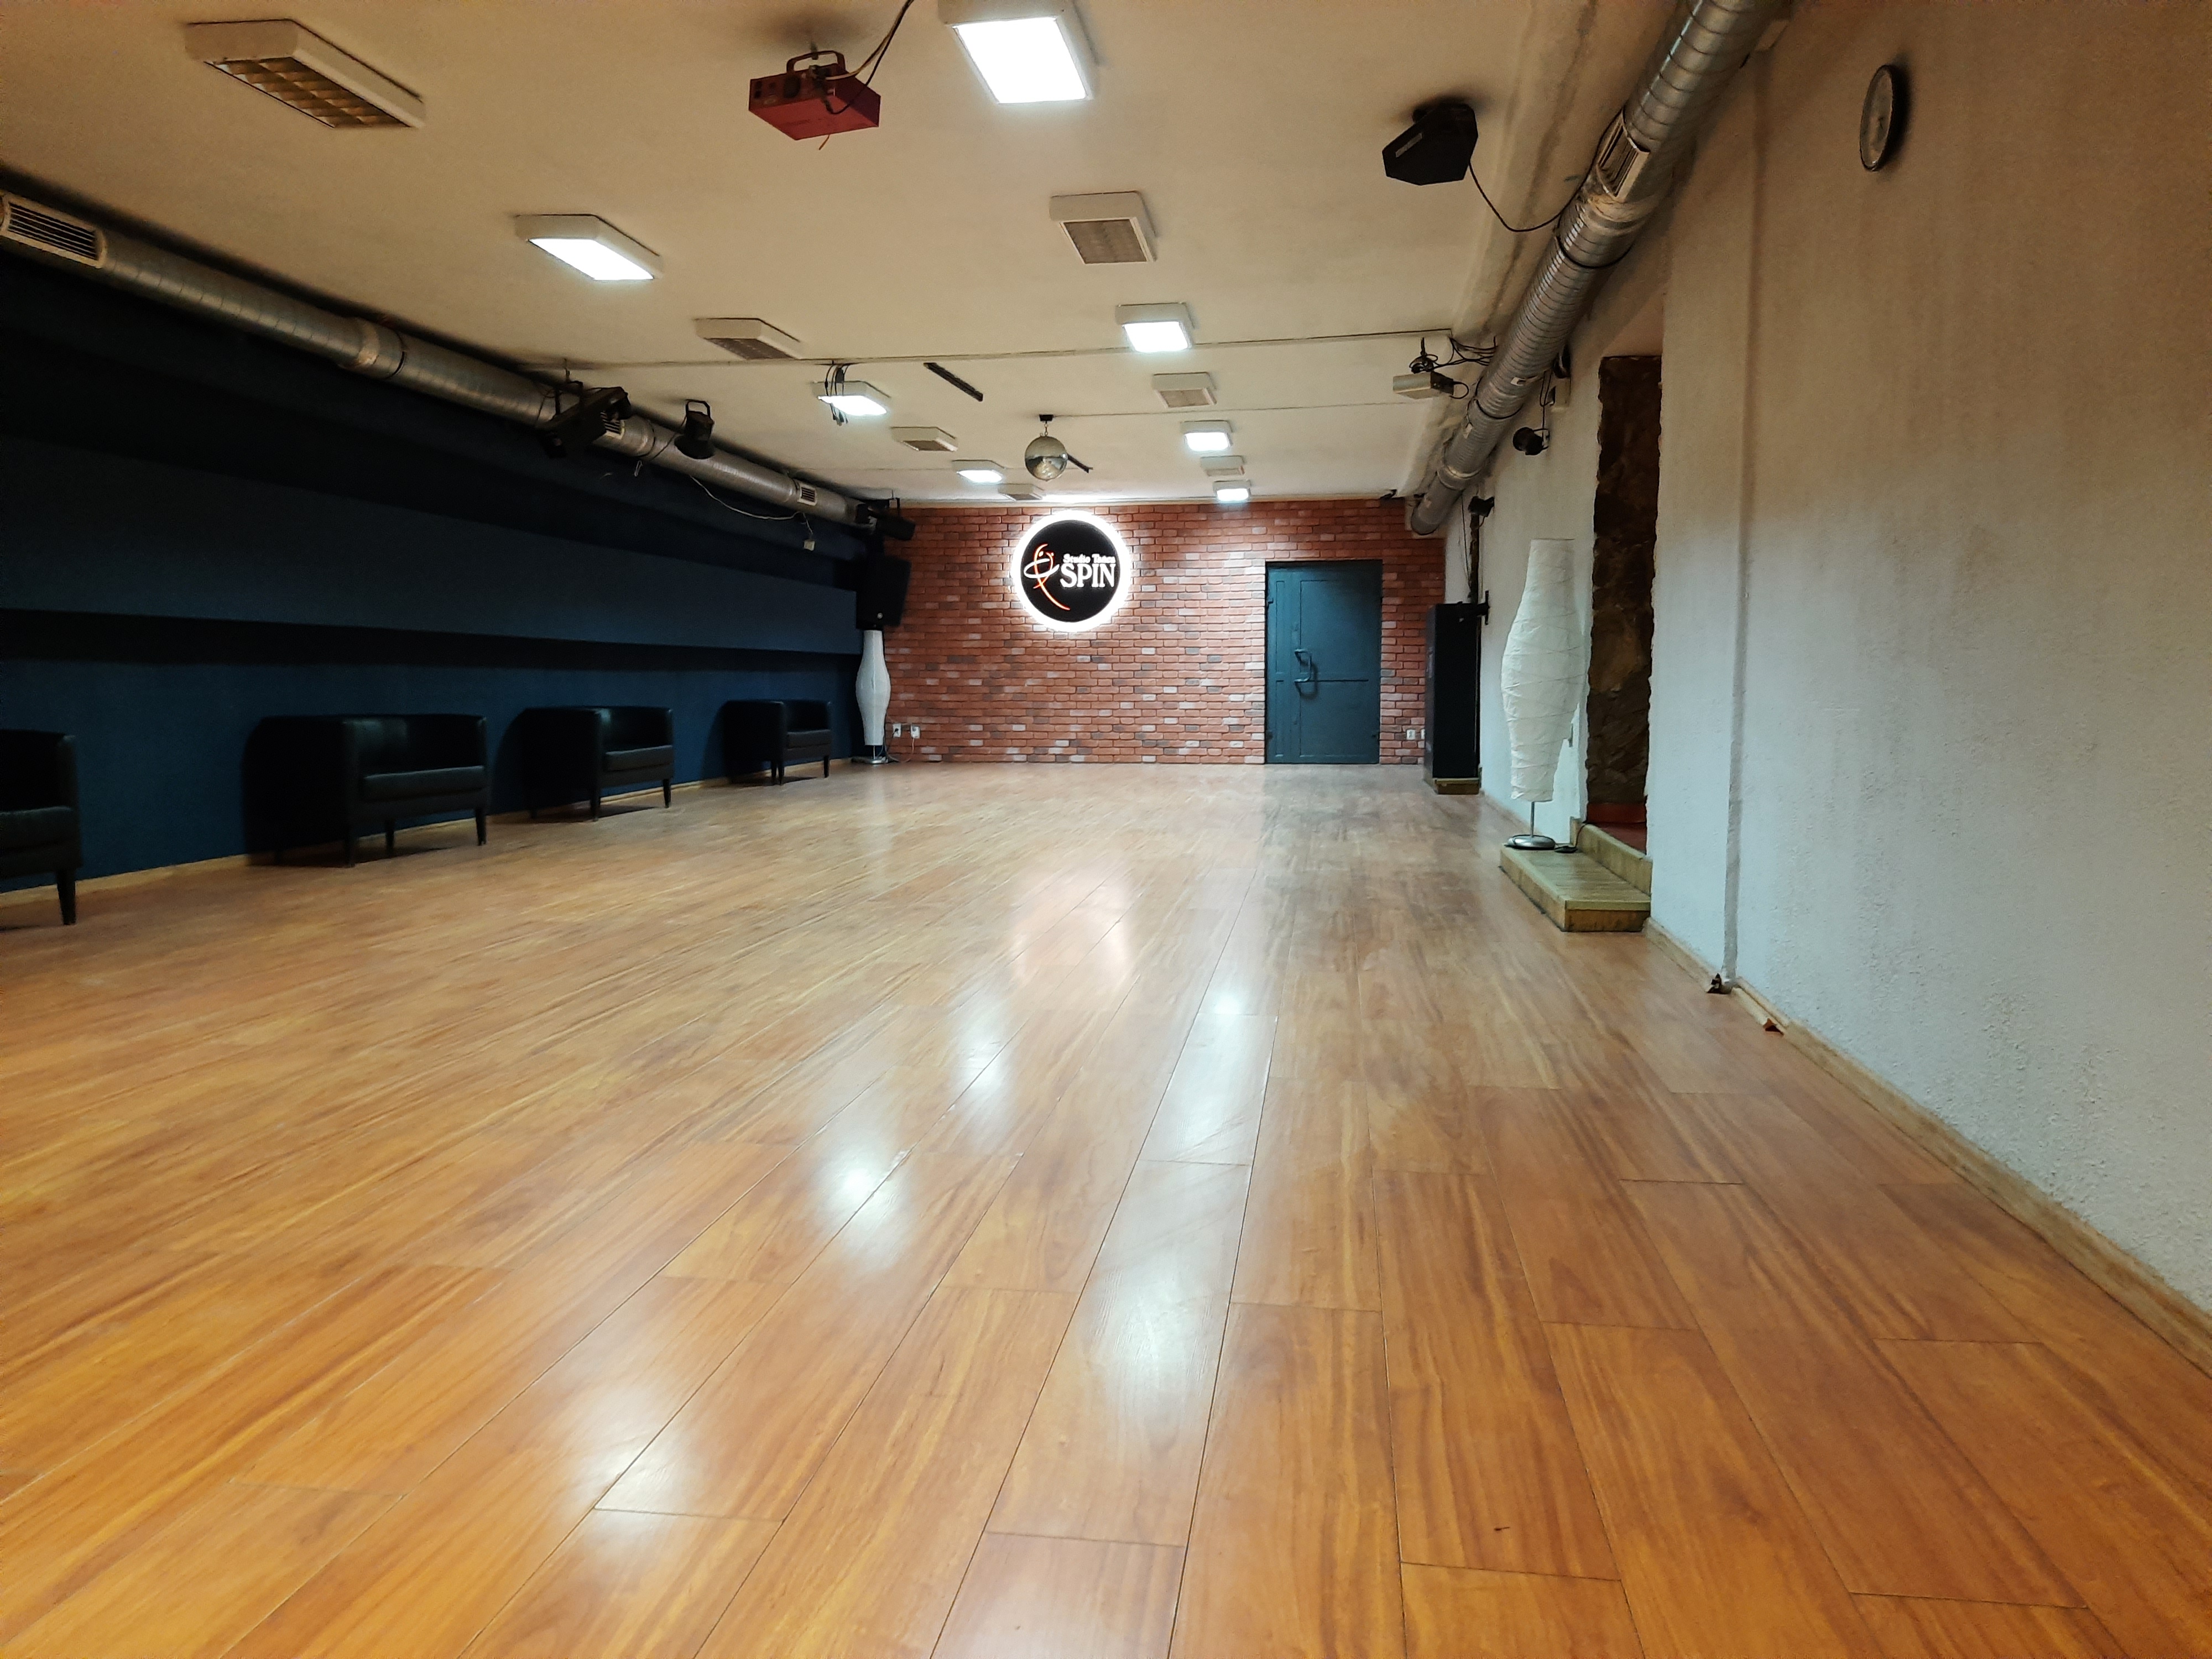 Studio Tańca Spin-Duża Sala Taneczna -tył